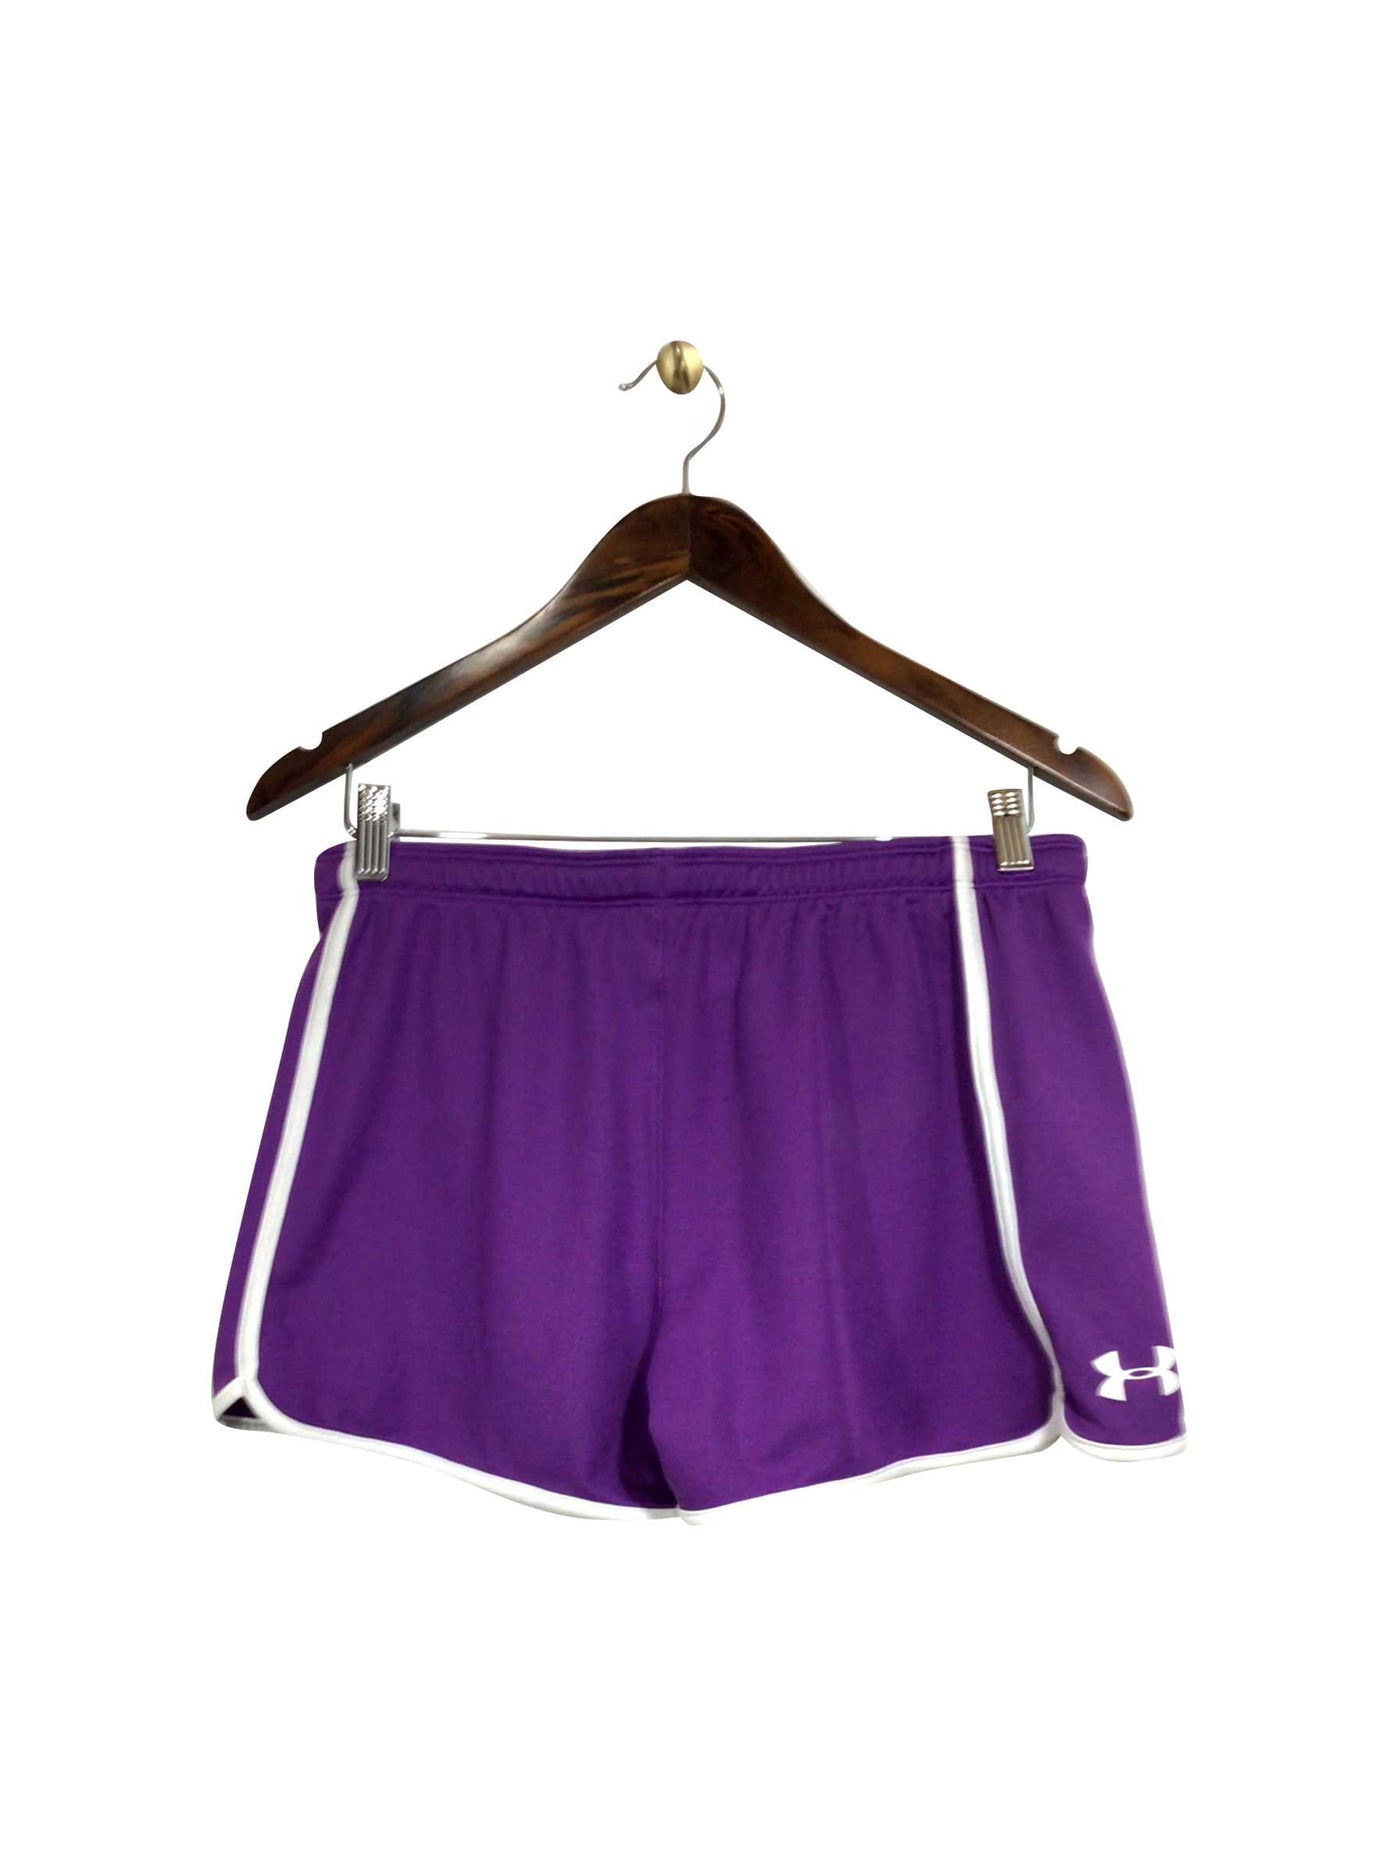 UNDER ARMOUR Regular fit Activewear Short in Purple - Size S | 21.3 $ KOOP